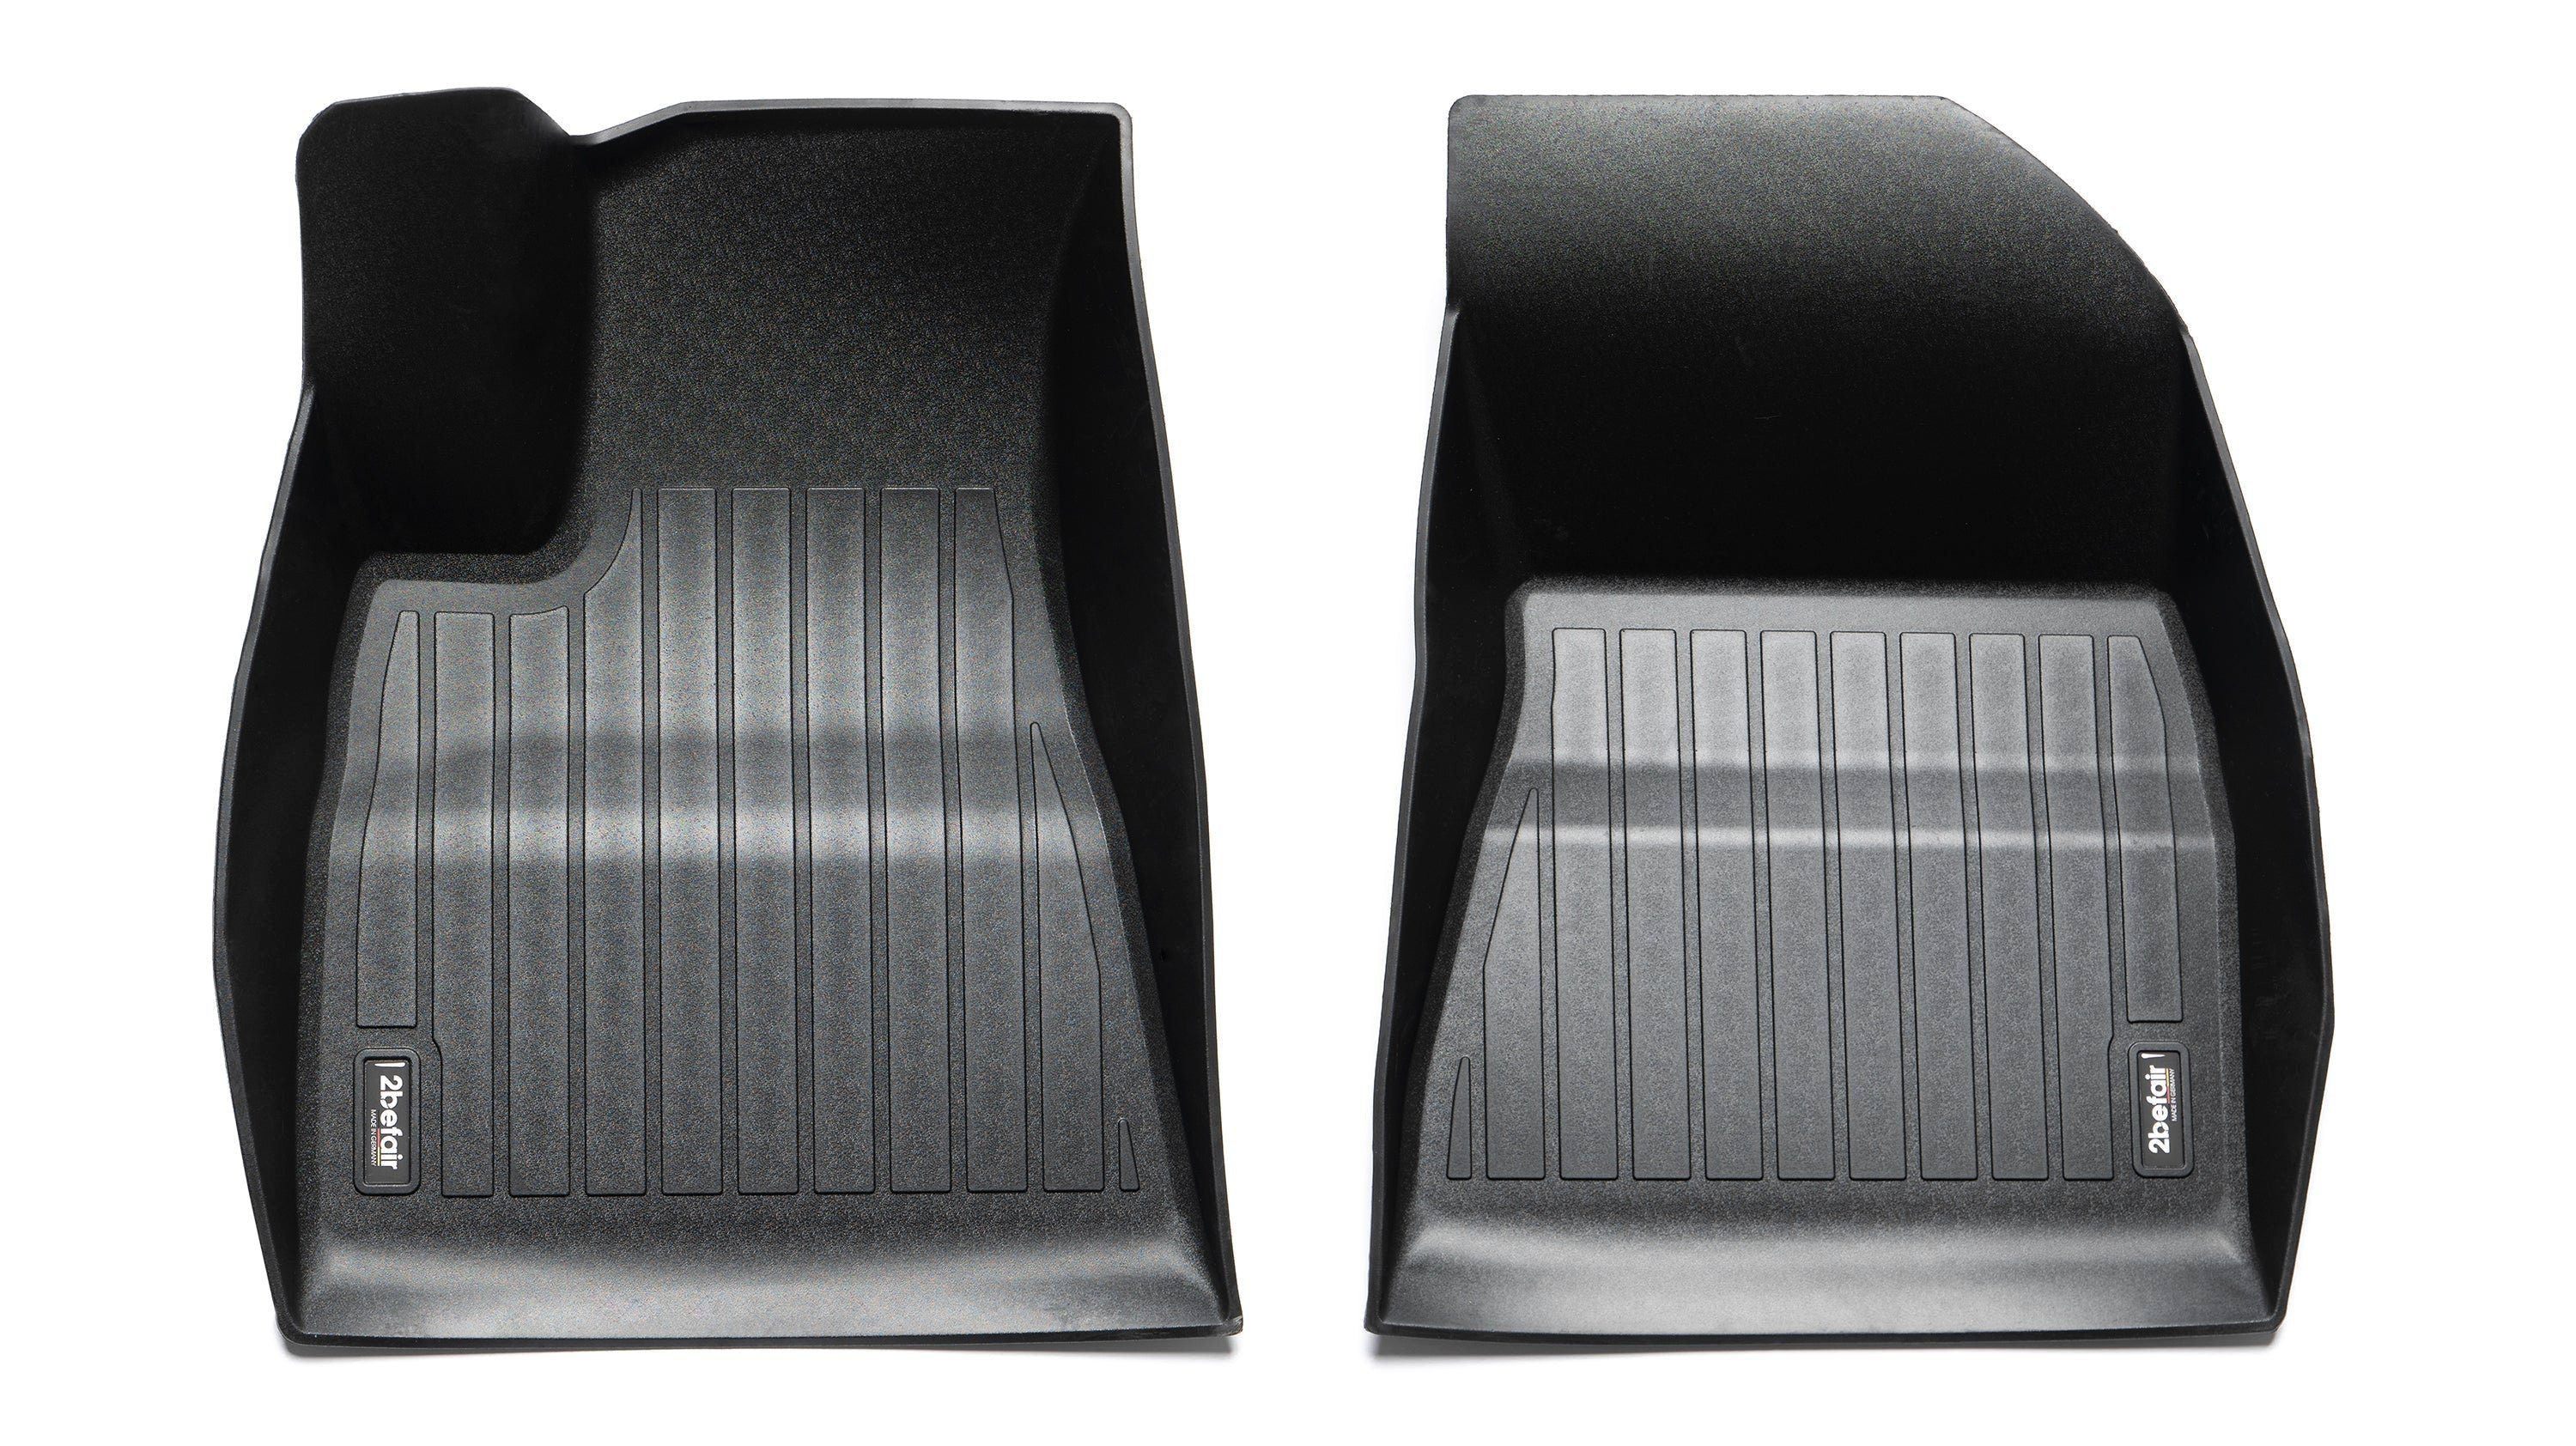 2befair Auto-Fußmatte Gummimatten Fußraum vorne für das Tesla Model 3, für  Tesla, Umfassender Schutz gegen Nässe und Schmutz